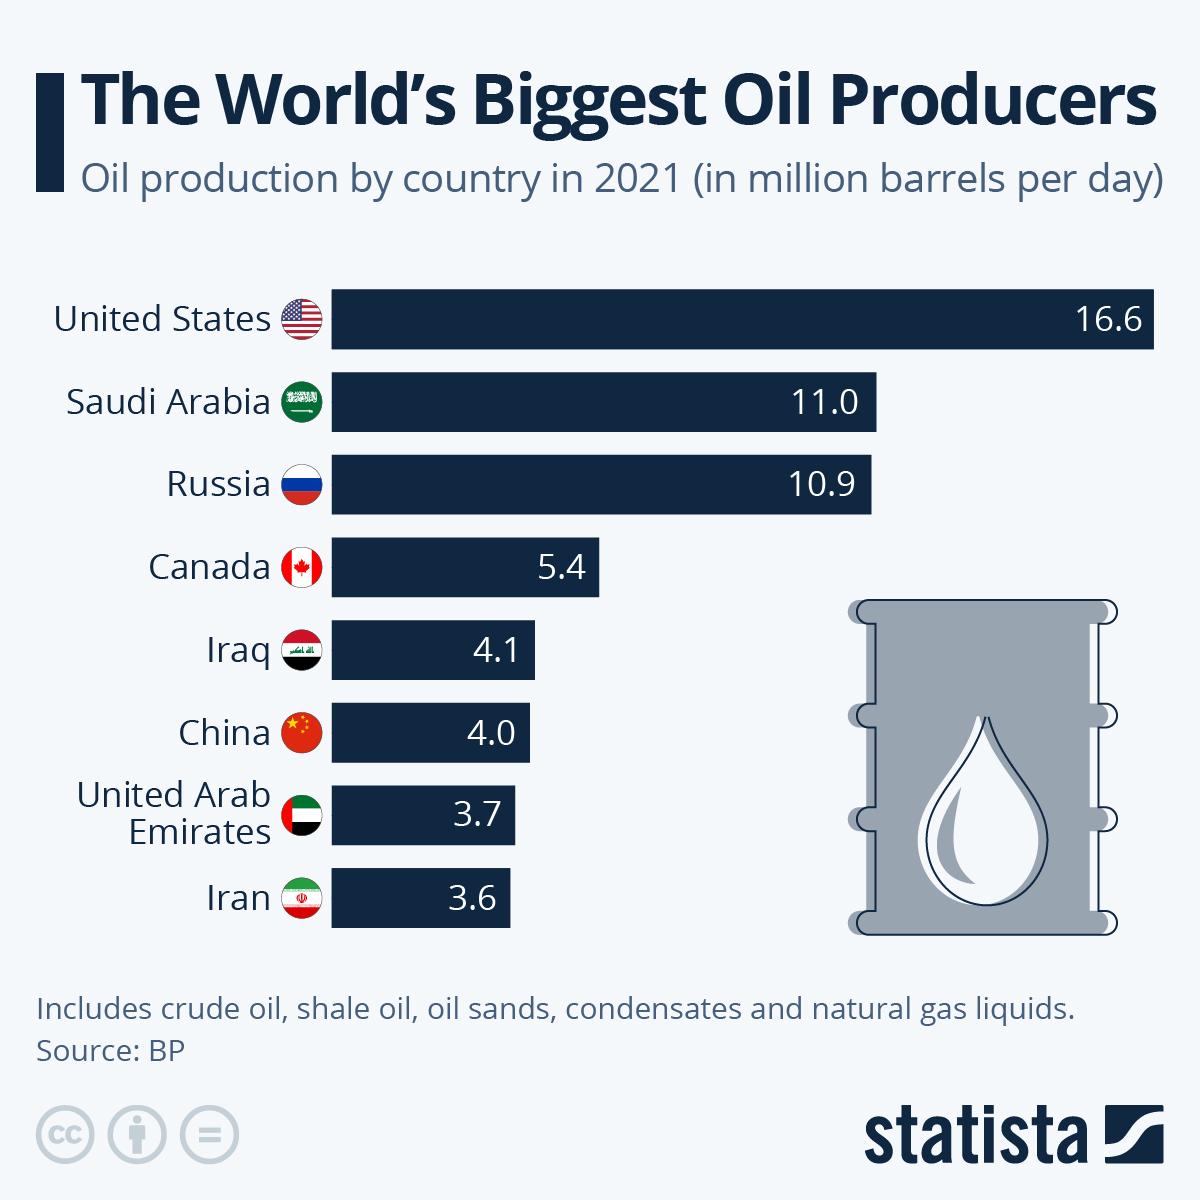 Os Estados Unidos são os maiores produtores mundiais de petróleo com uma produção de 16.6 milhões de barris por dia